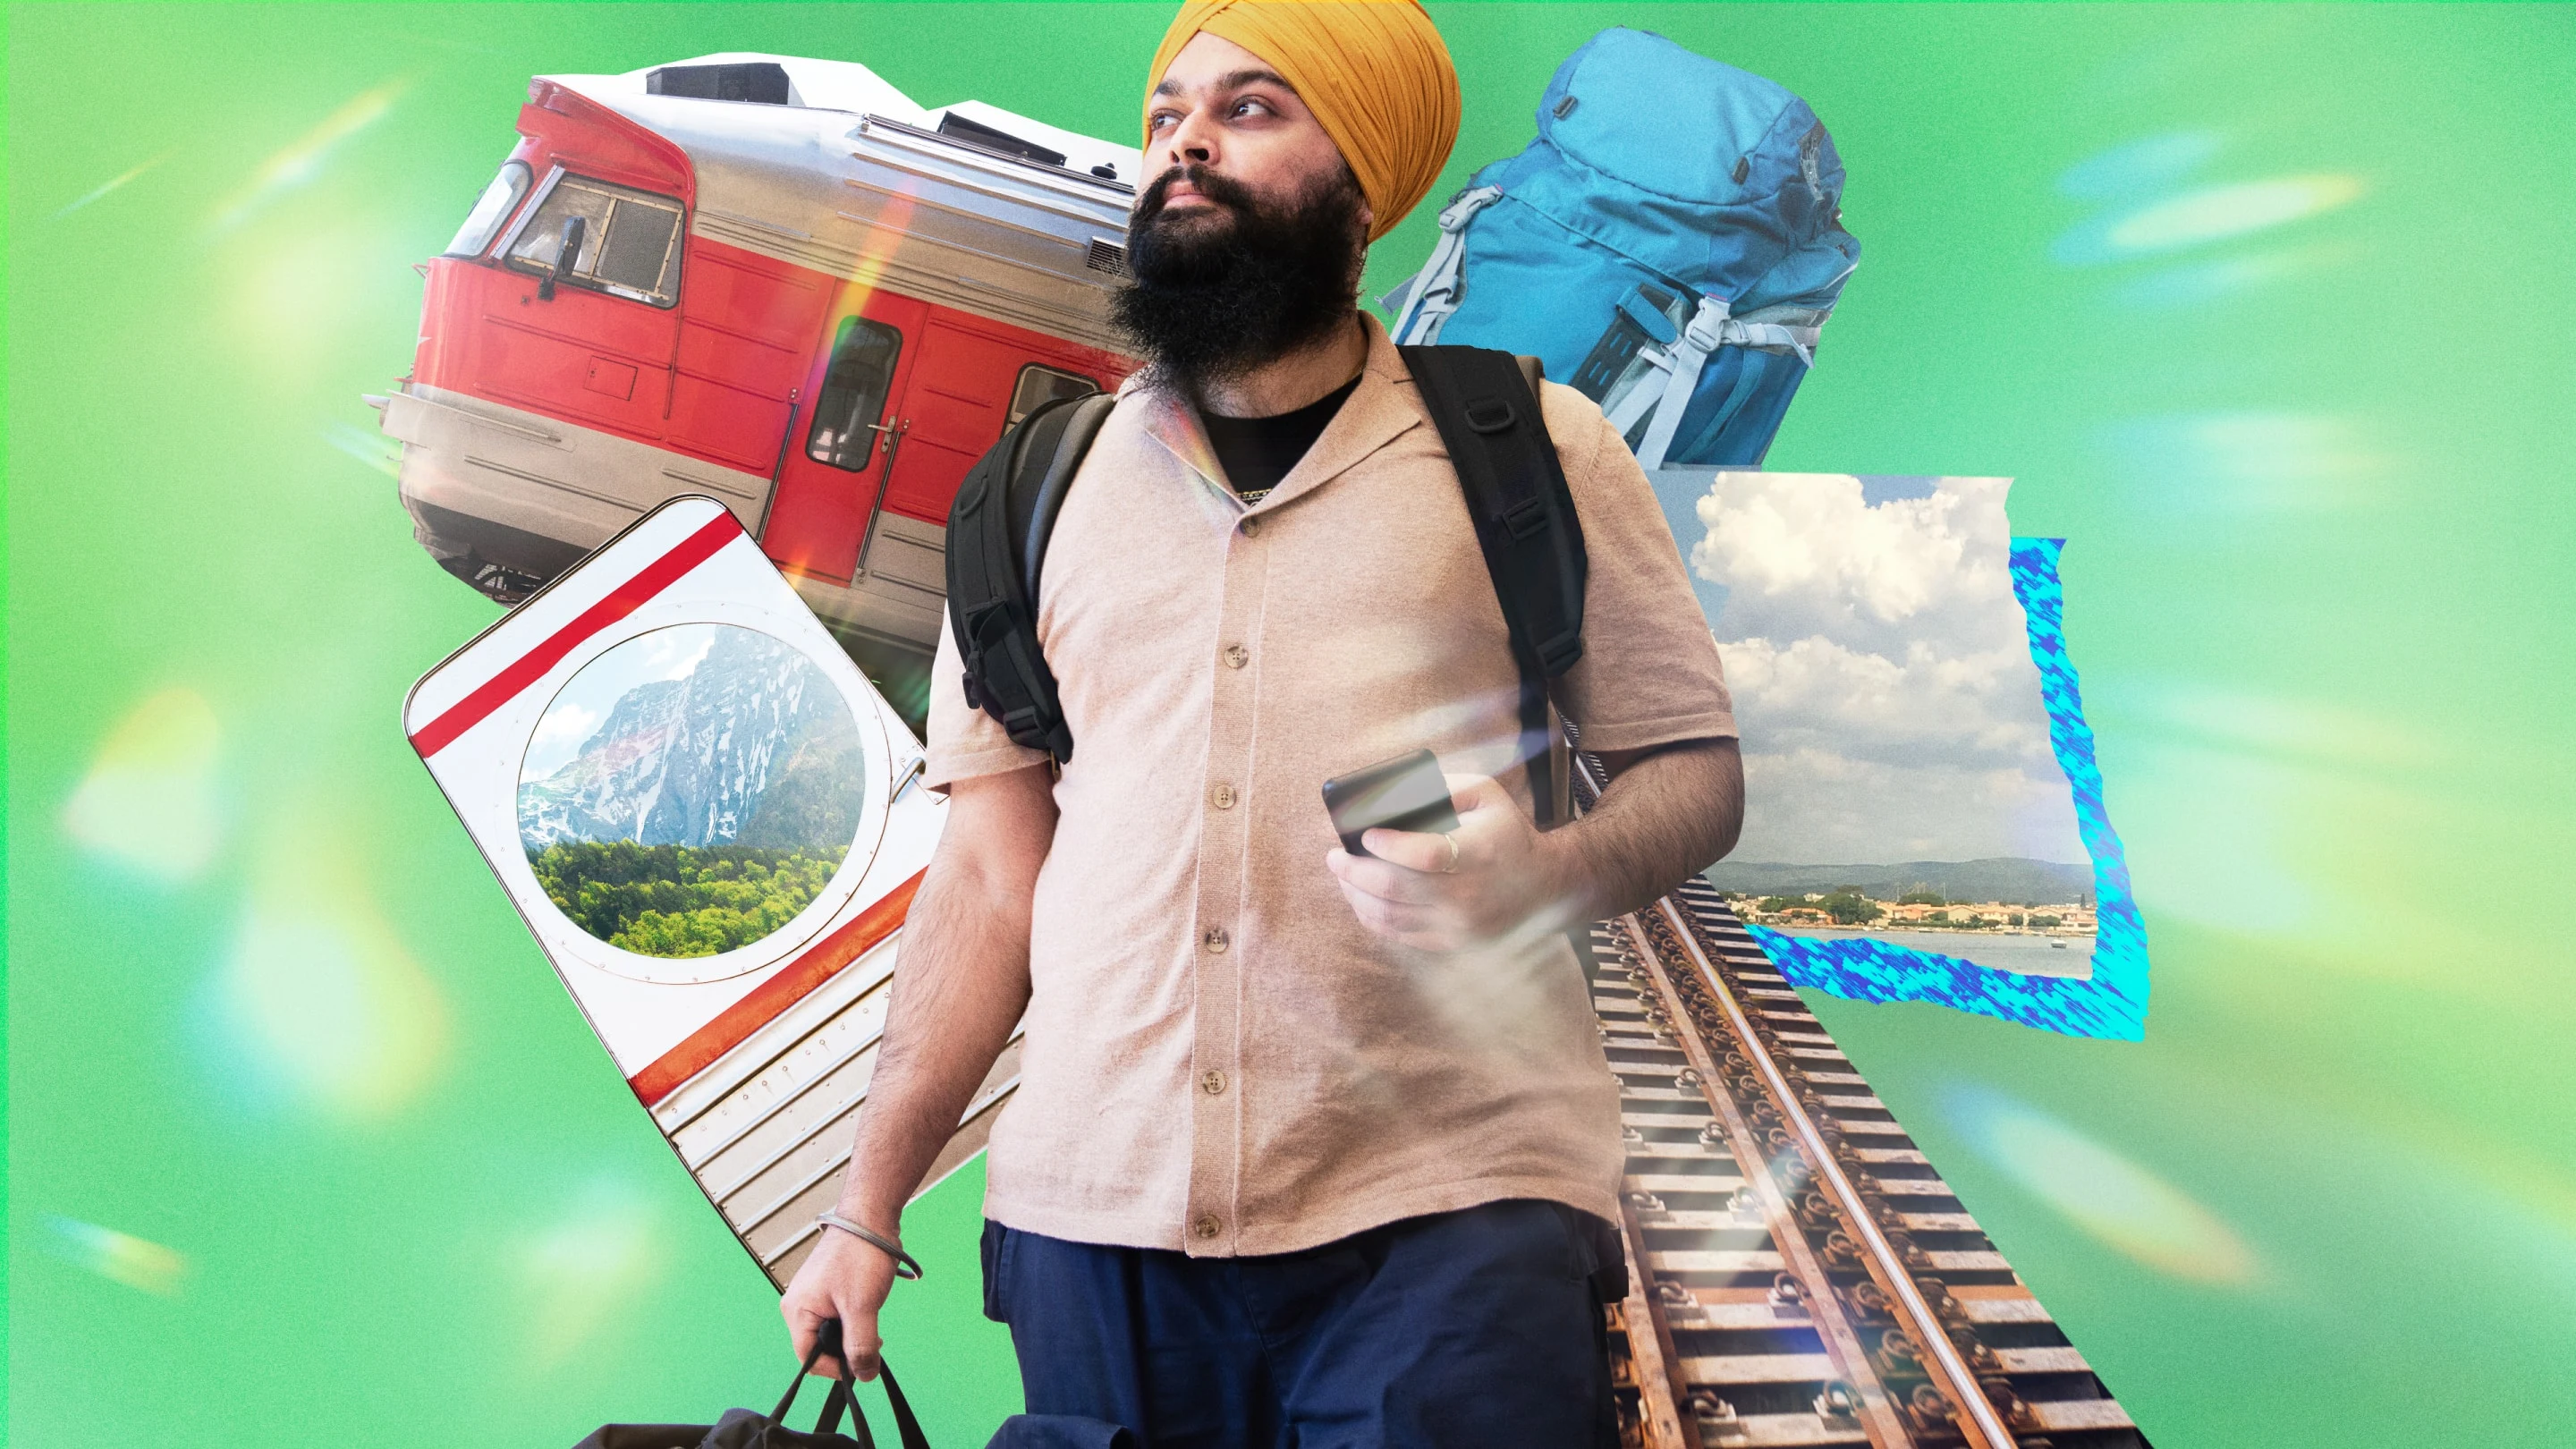 Collage que muestra a un hombre sij con una mochila, rodeado de vías de tren deconstruidas, una ventana que muestra un paisaje montañoso y el vagón de cola de un tren de pasajeros.